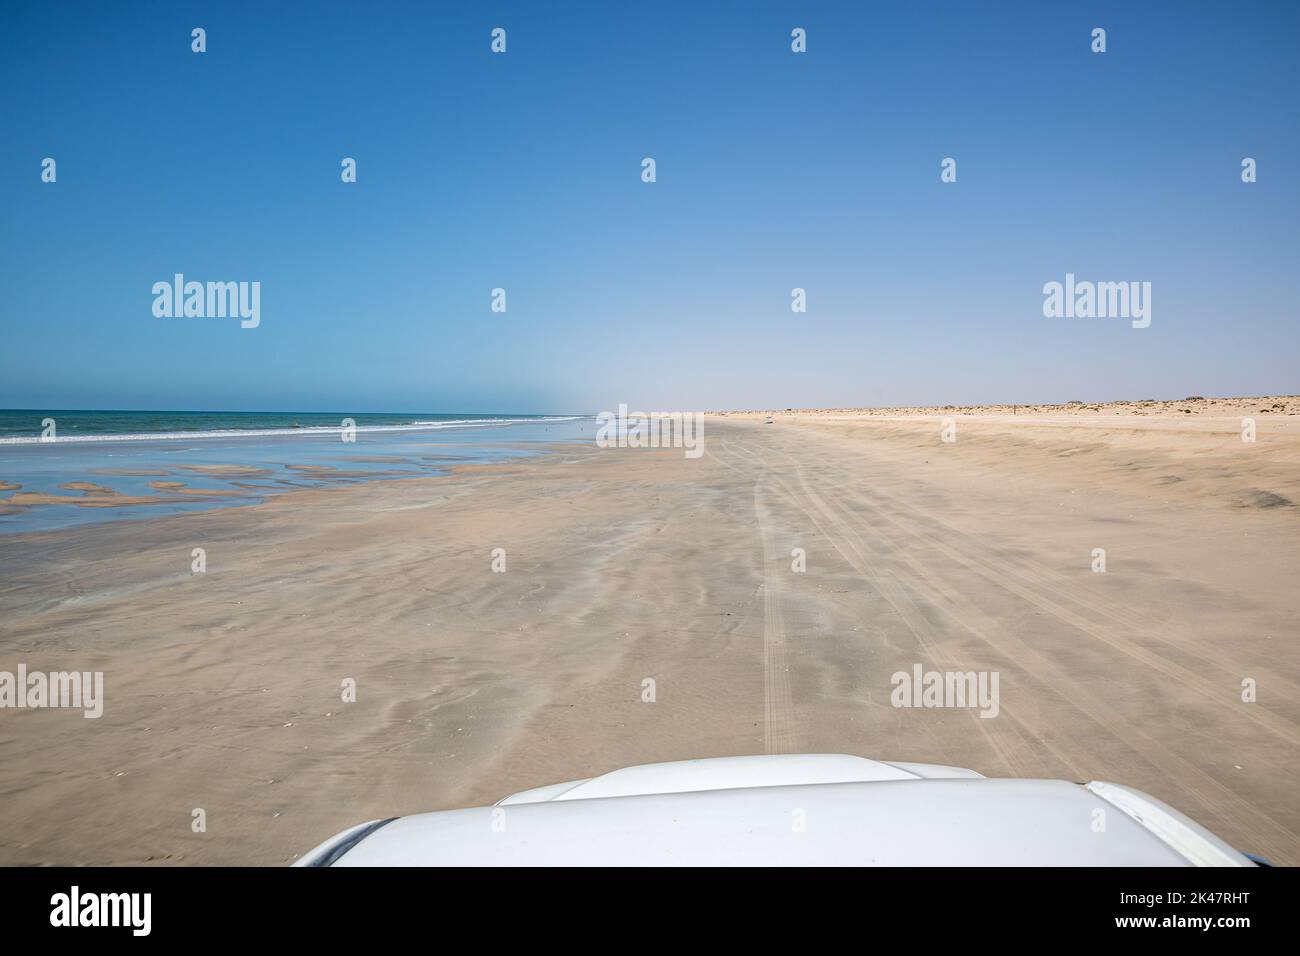 Guida con un servizio di prelievo 4x4 su una spiaggia sabbiosa durante la bassa marea, l'Oman meridionale Foto Stock